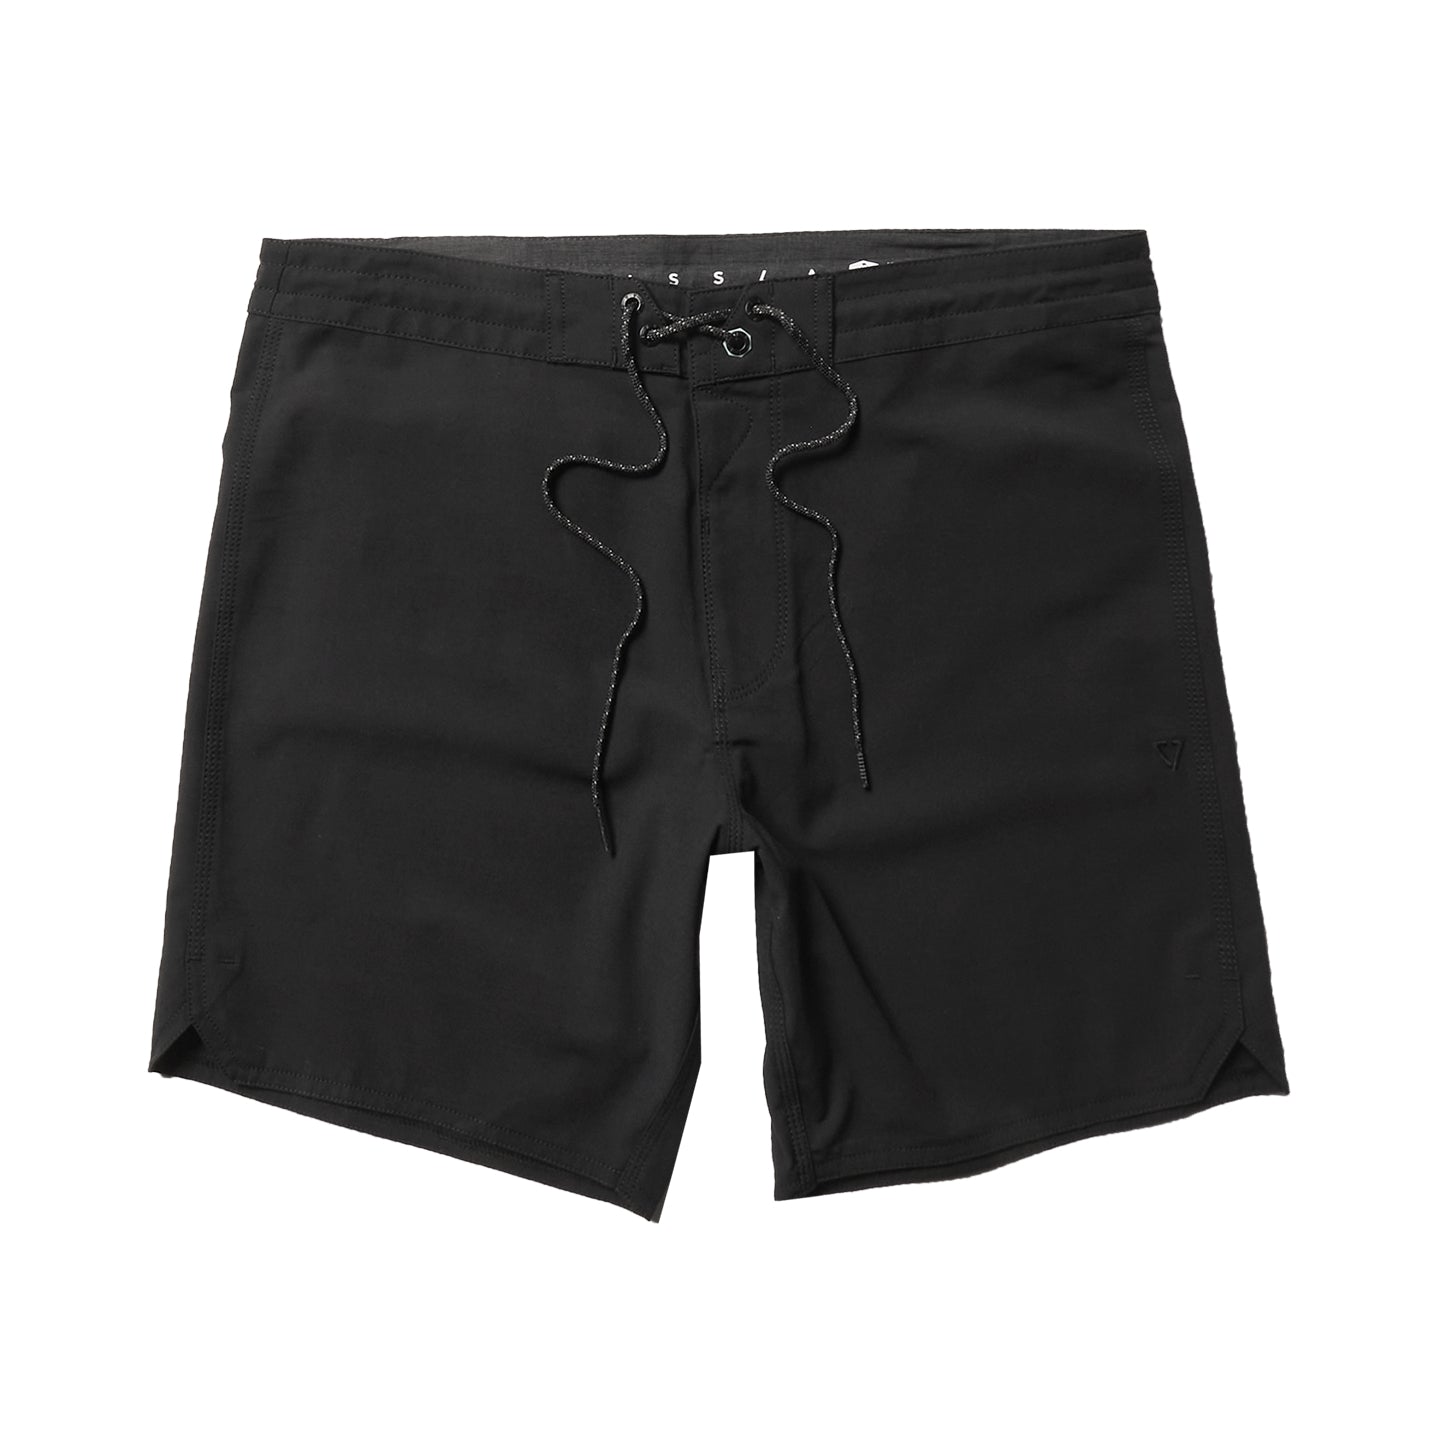 Vissla Short Sets 16.5 Boardshorts B2-Black 30